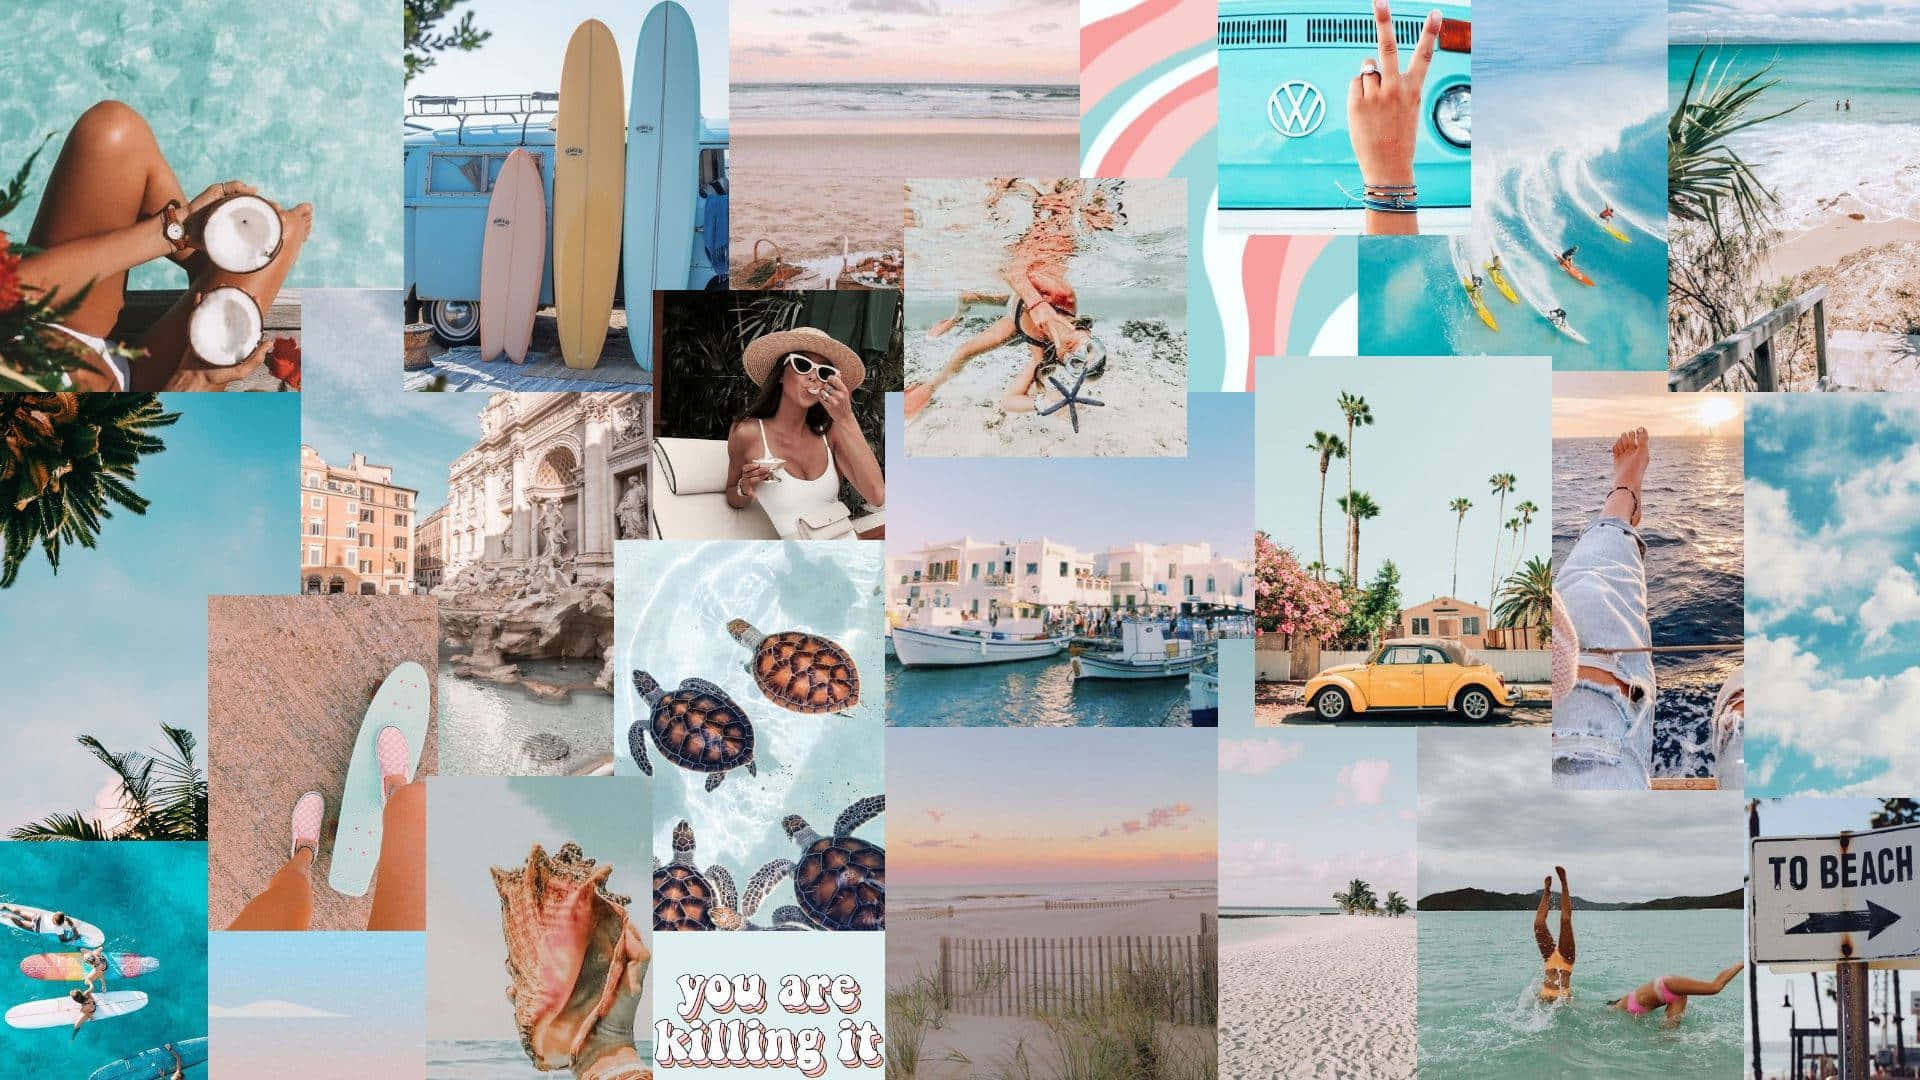 Beach Girl Aesthetic Collage Wallpaper.jpg Wallpaper